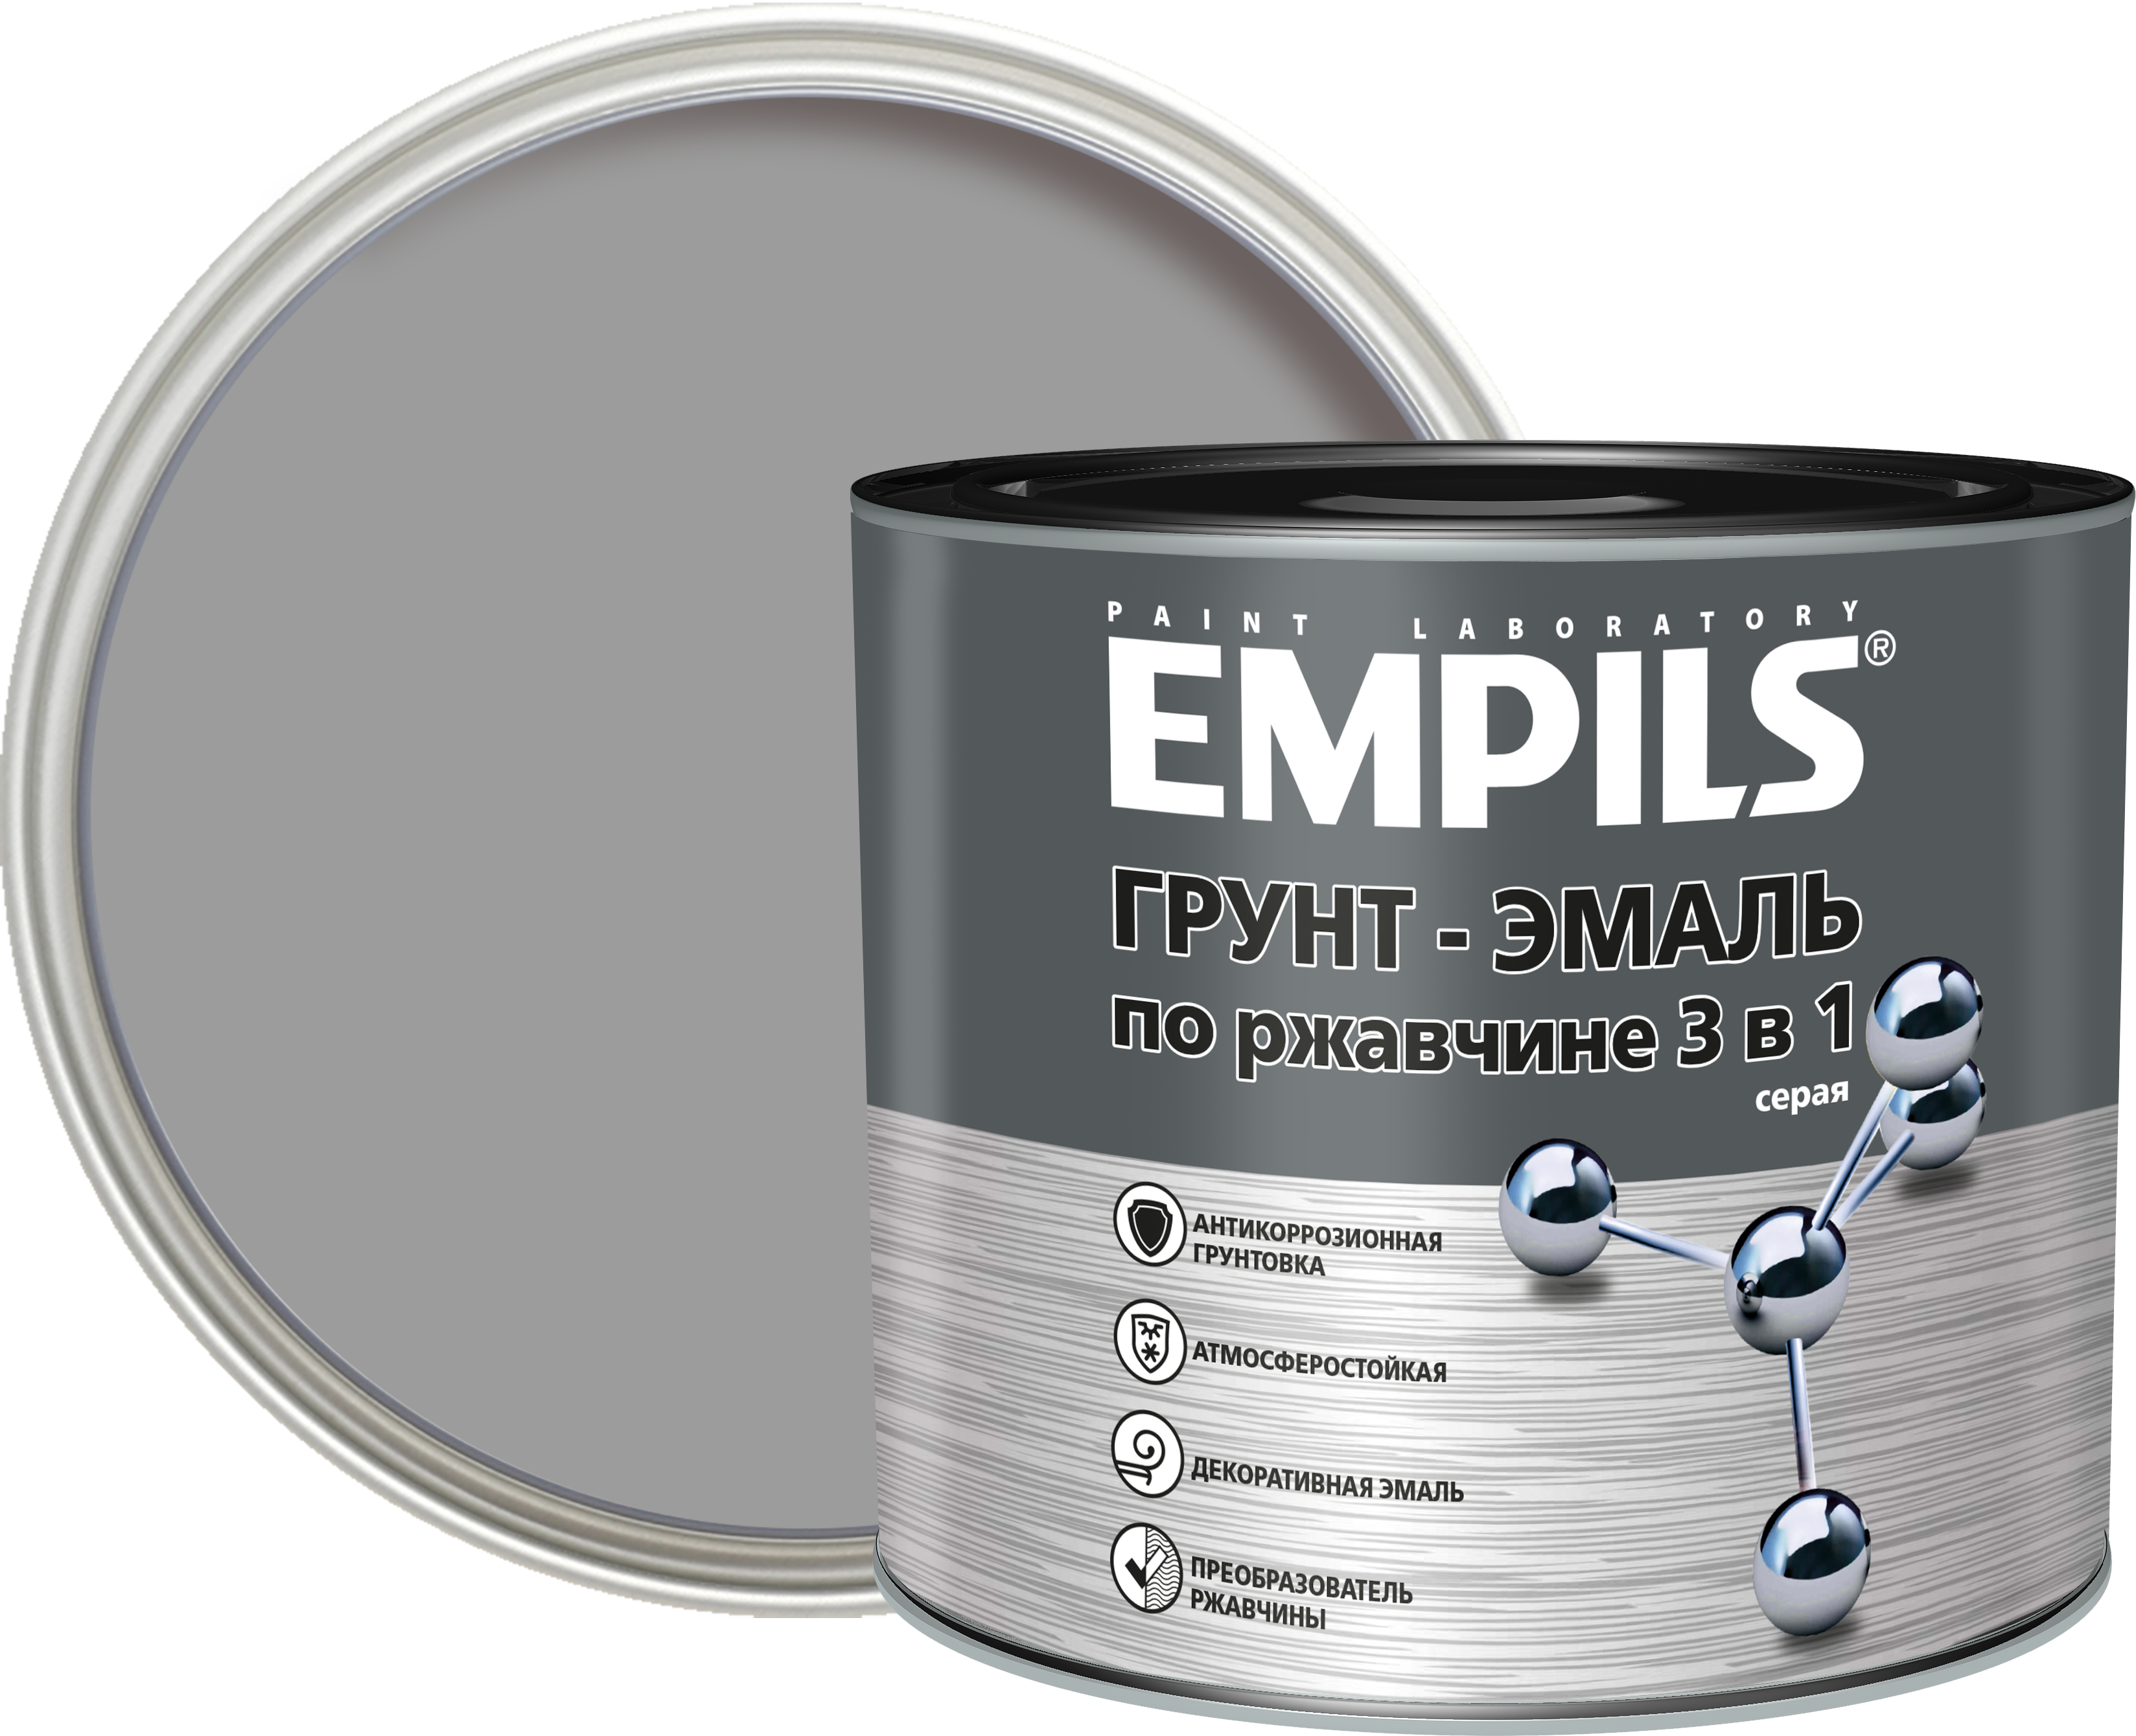 84434181 Грунт-эмаль по ржавчине 3 в 1 PL цвет серый 2.7 кг STLM-0049999 EMPILS